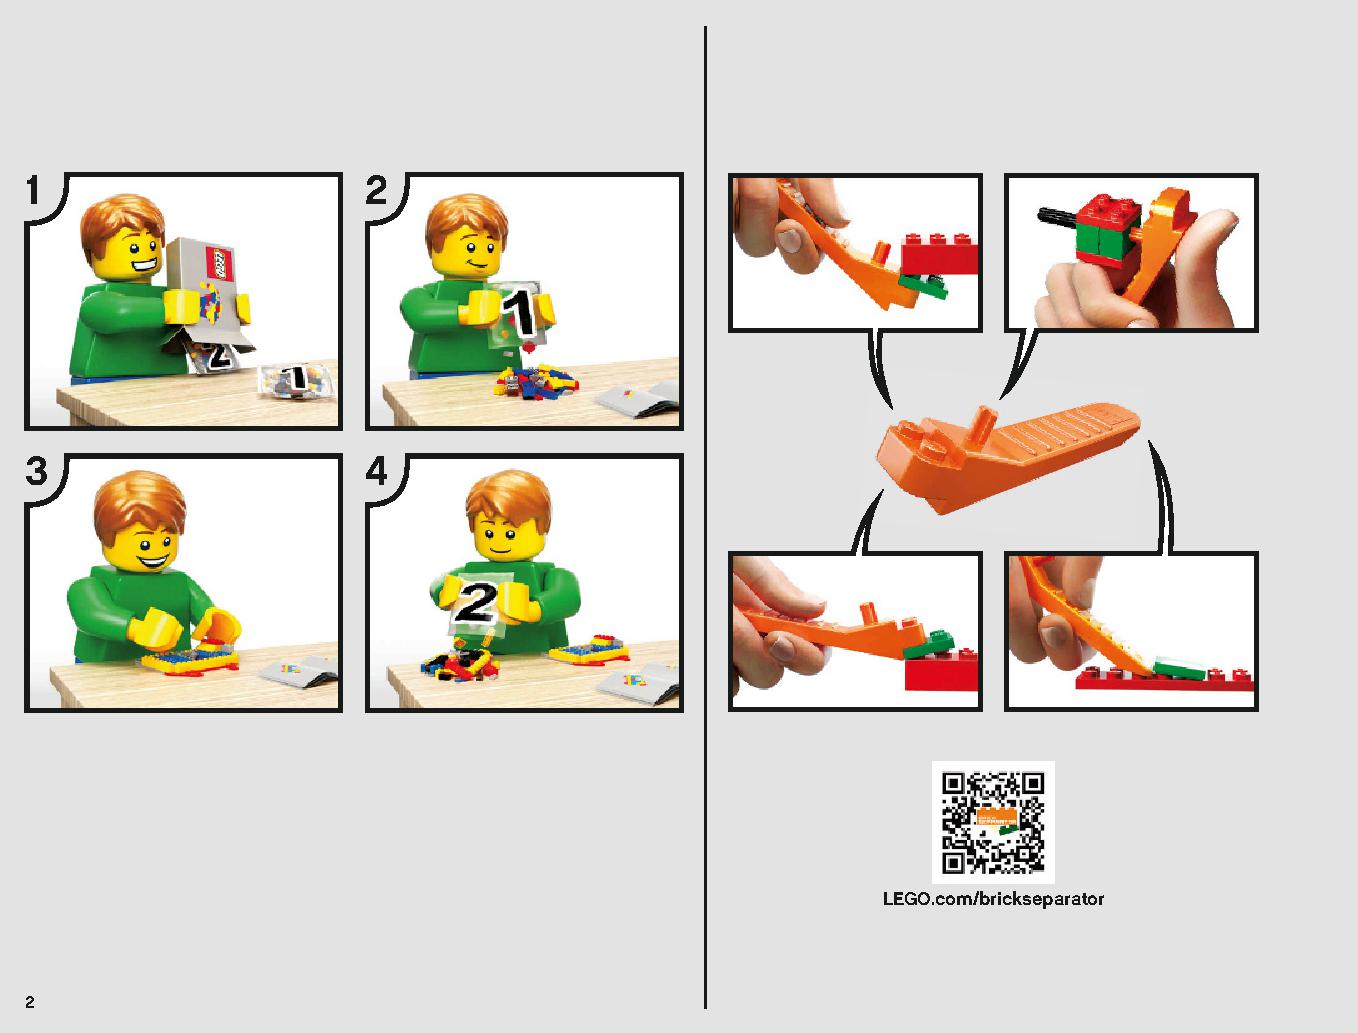 Xウィング・スターファイター 75218 レゴの商品情報 レゴの説明書・組立方法 2 page